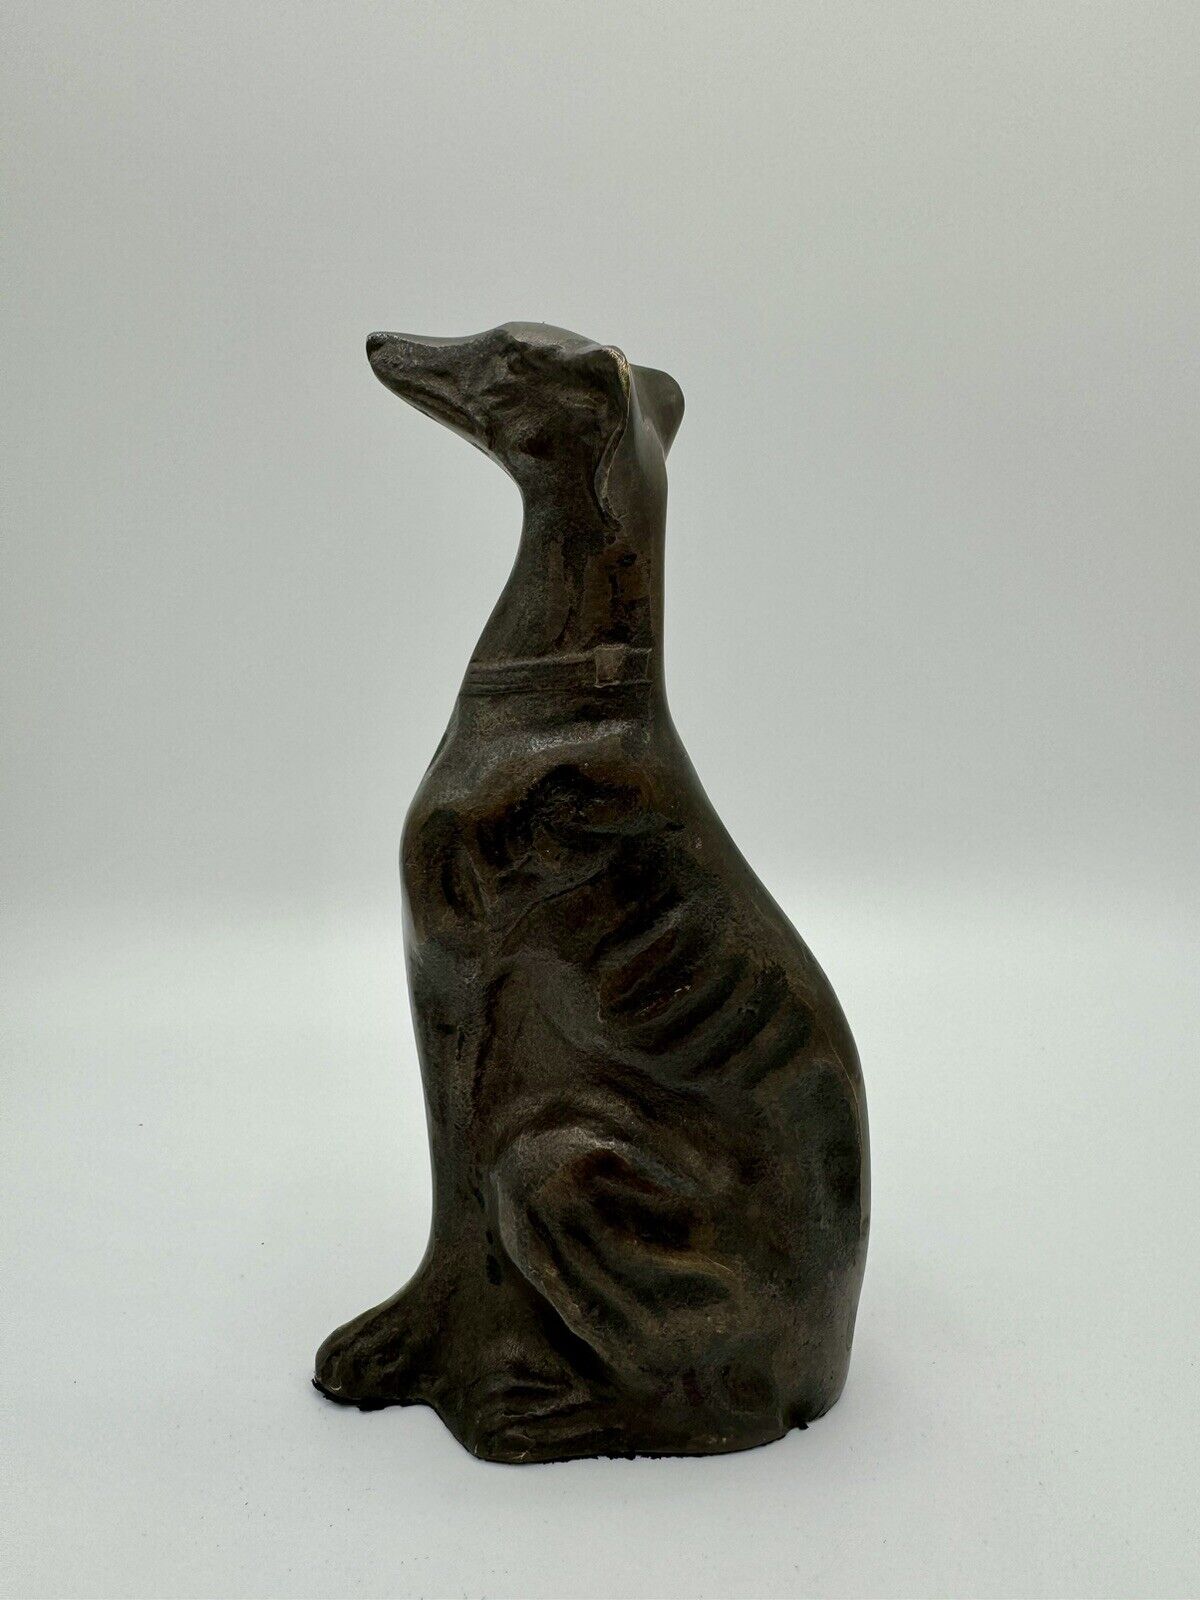 Vintage Solid Brass/Bronze Greyhound Saluki Dog Statue Sculpture 6.5” Tall